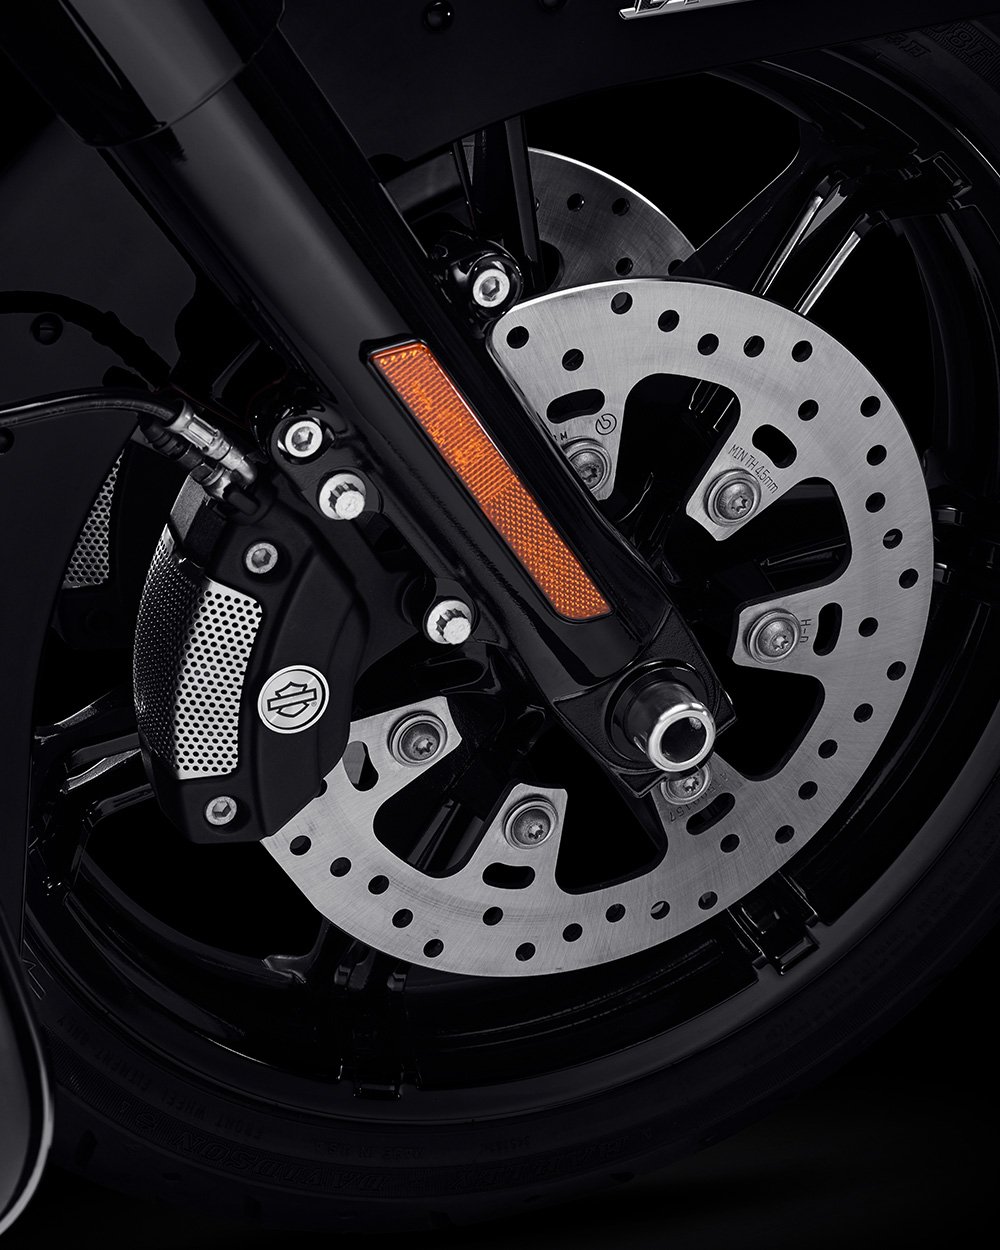 Propojené brzdy Reflex Brembo s volitelným systémem ABS motocyklu Road Glide 2022